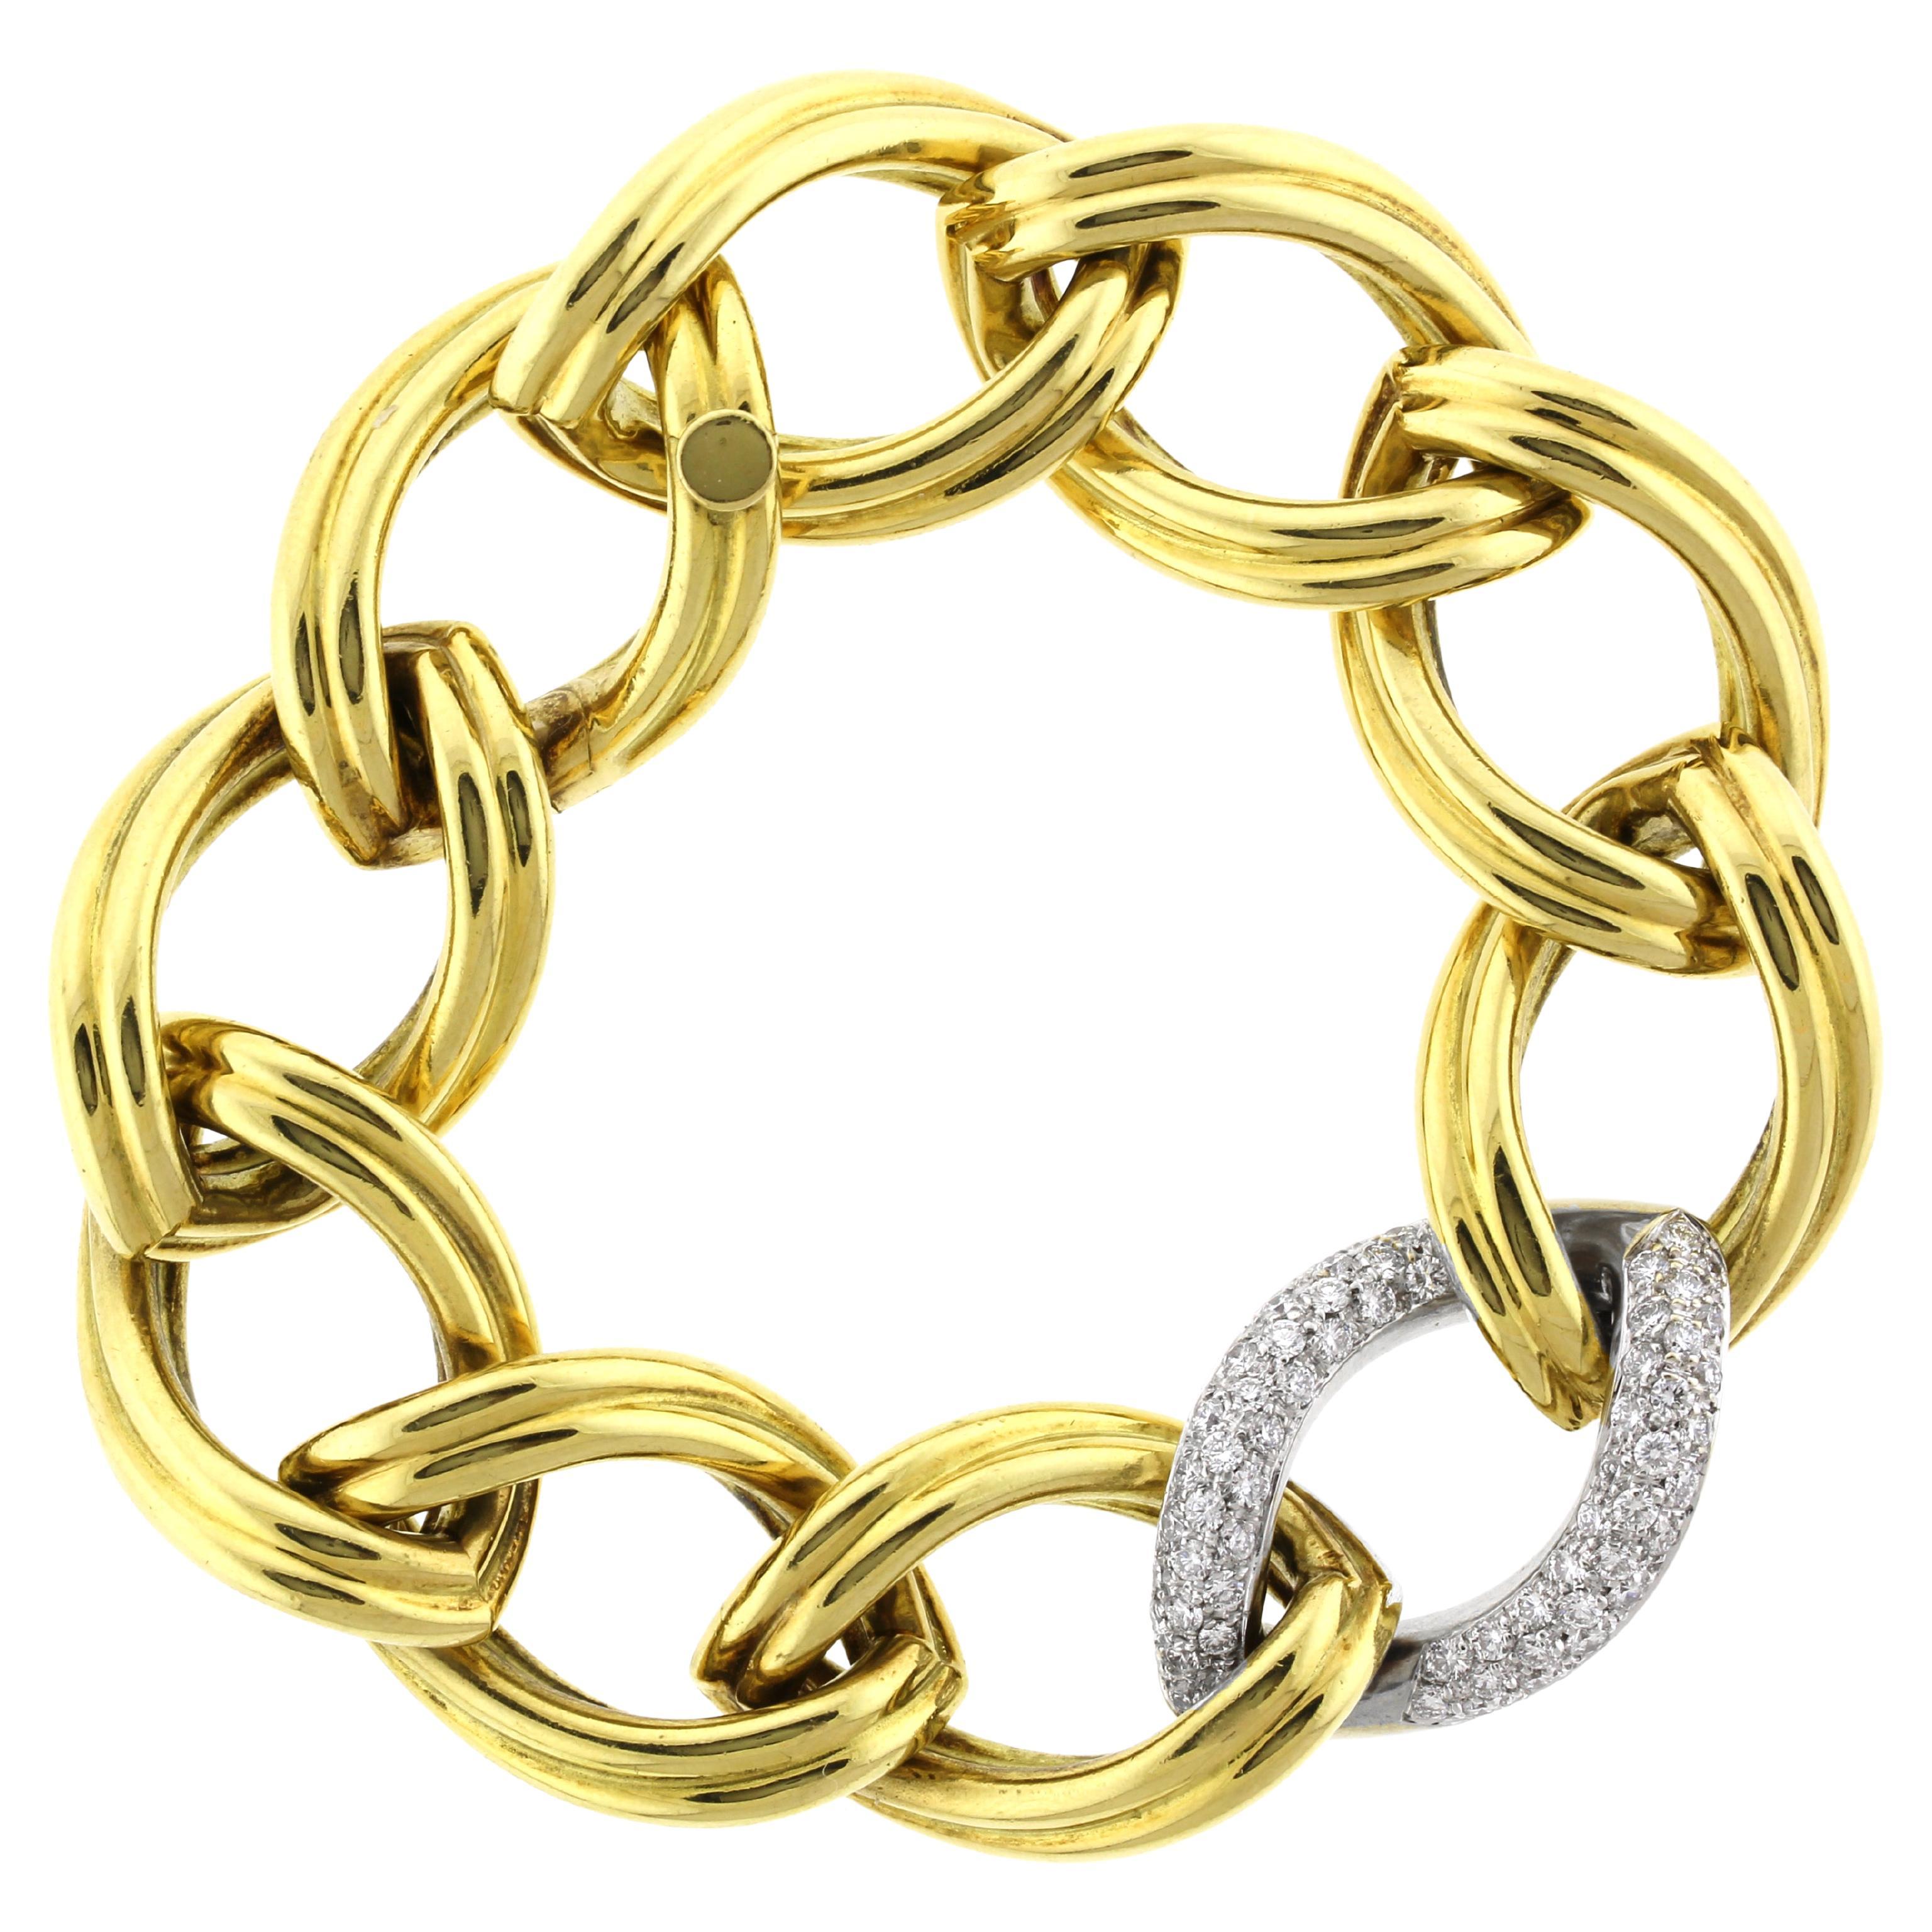 Ovales A Link-Armband aus 18kt Gold und Diamanten